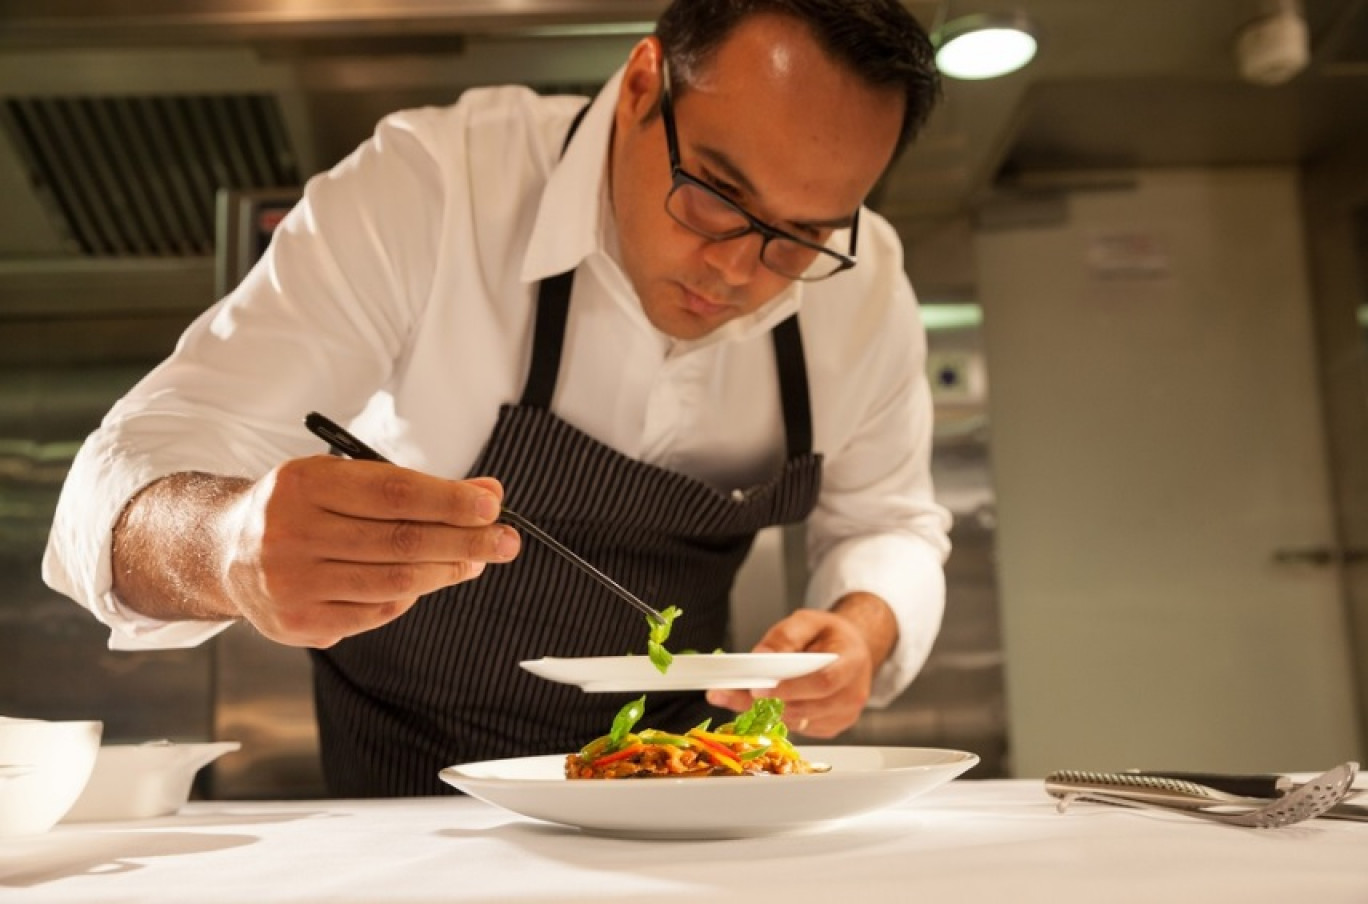 L'étoile verte du Guide Michelin récompense la démarche éco-responsable, locale et durable dans laquelle le restaurant s'engage.